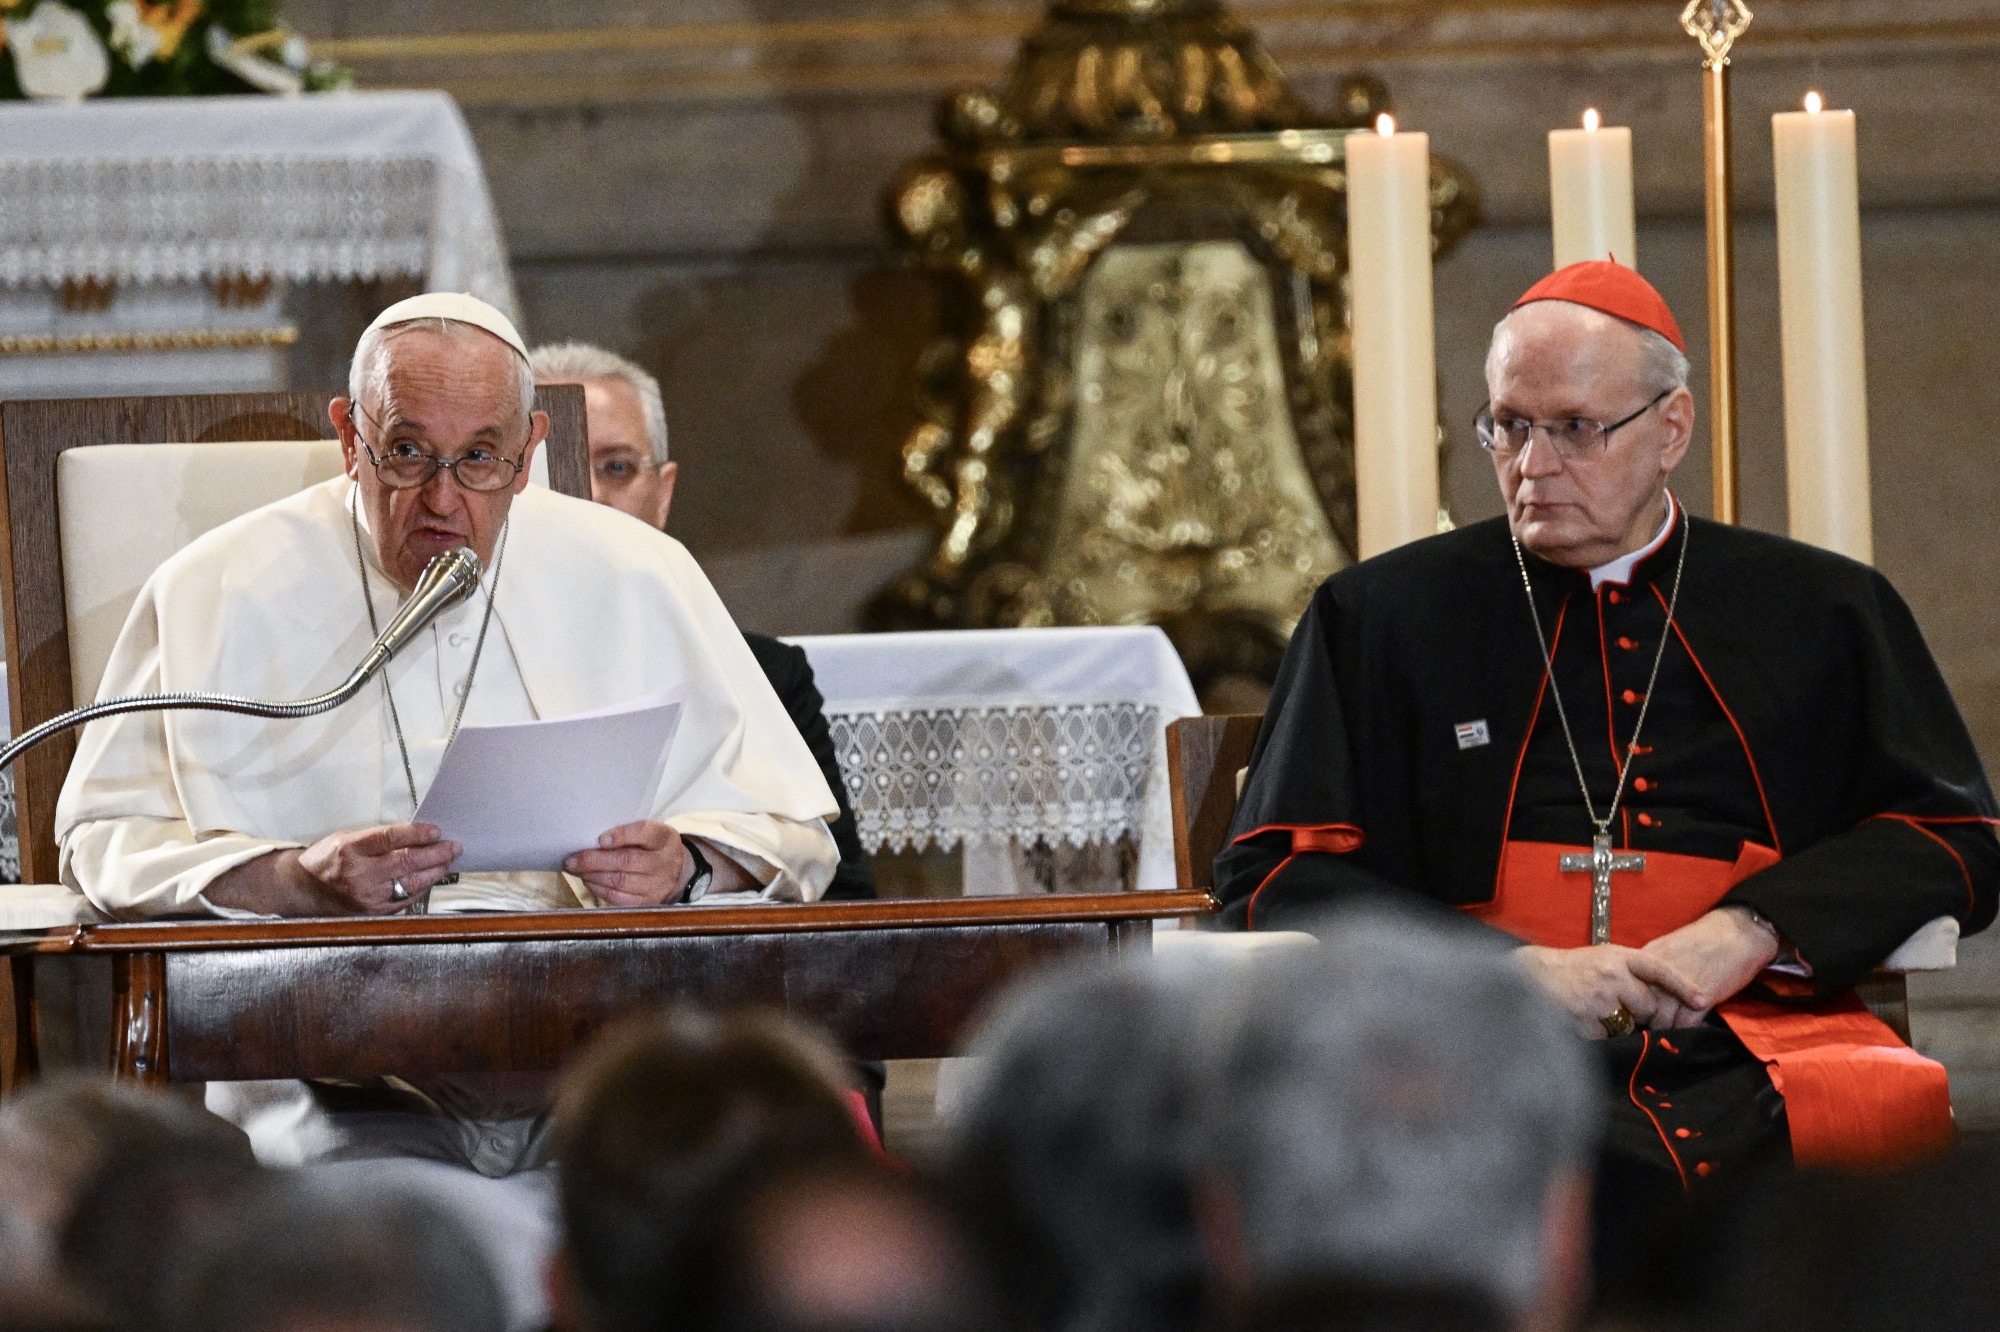 Szembemennek a pápával a magyar püspökök, és közben odaszúrnak egyet az elvált katolikusoknak is